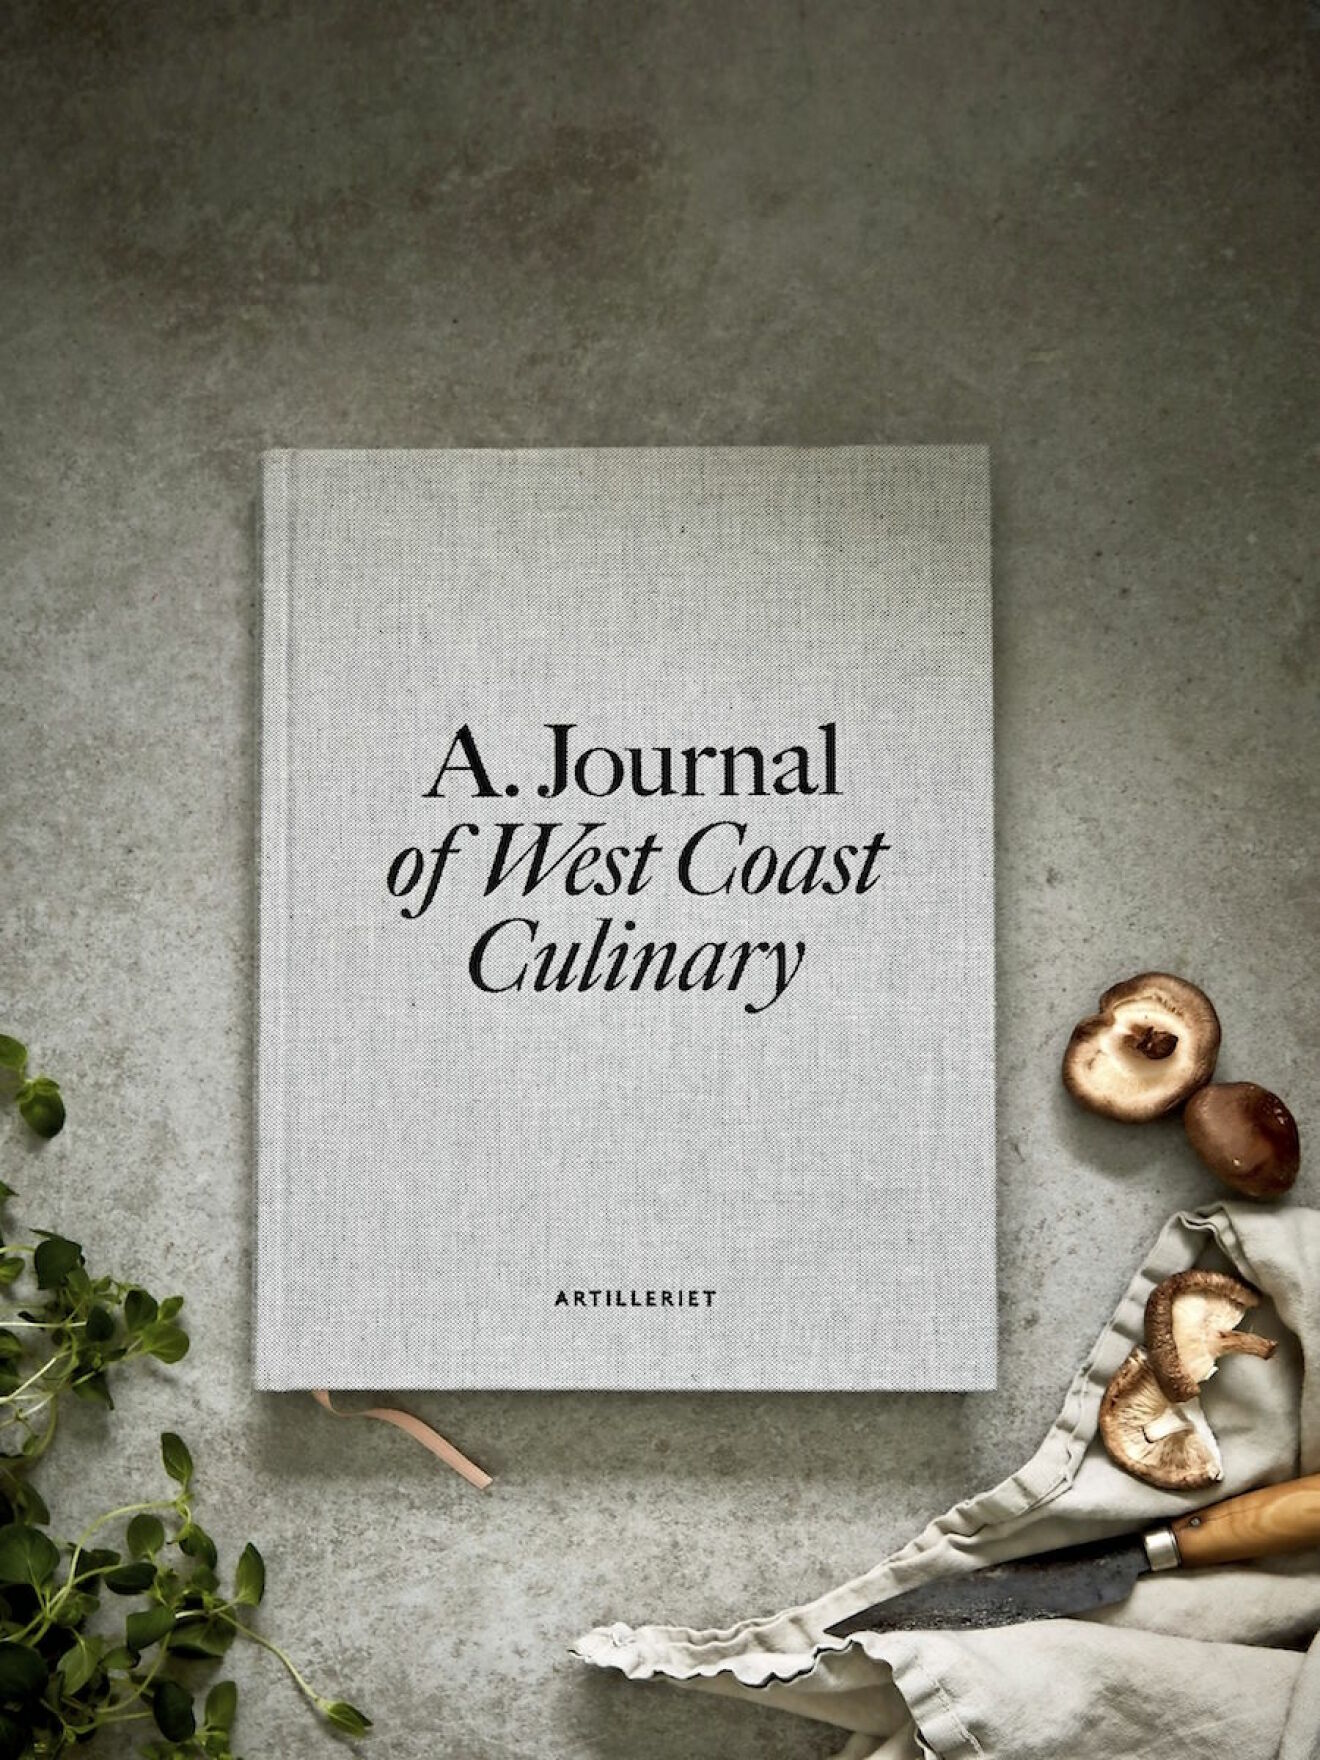 Inredningsbutiken Artilleriets A Journal of west coast culinary.